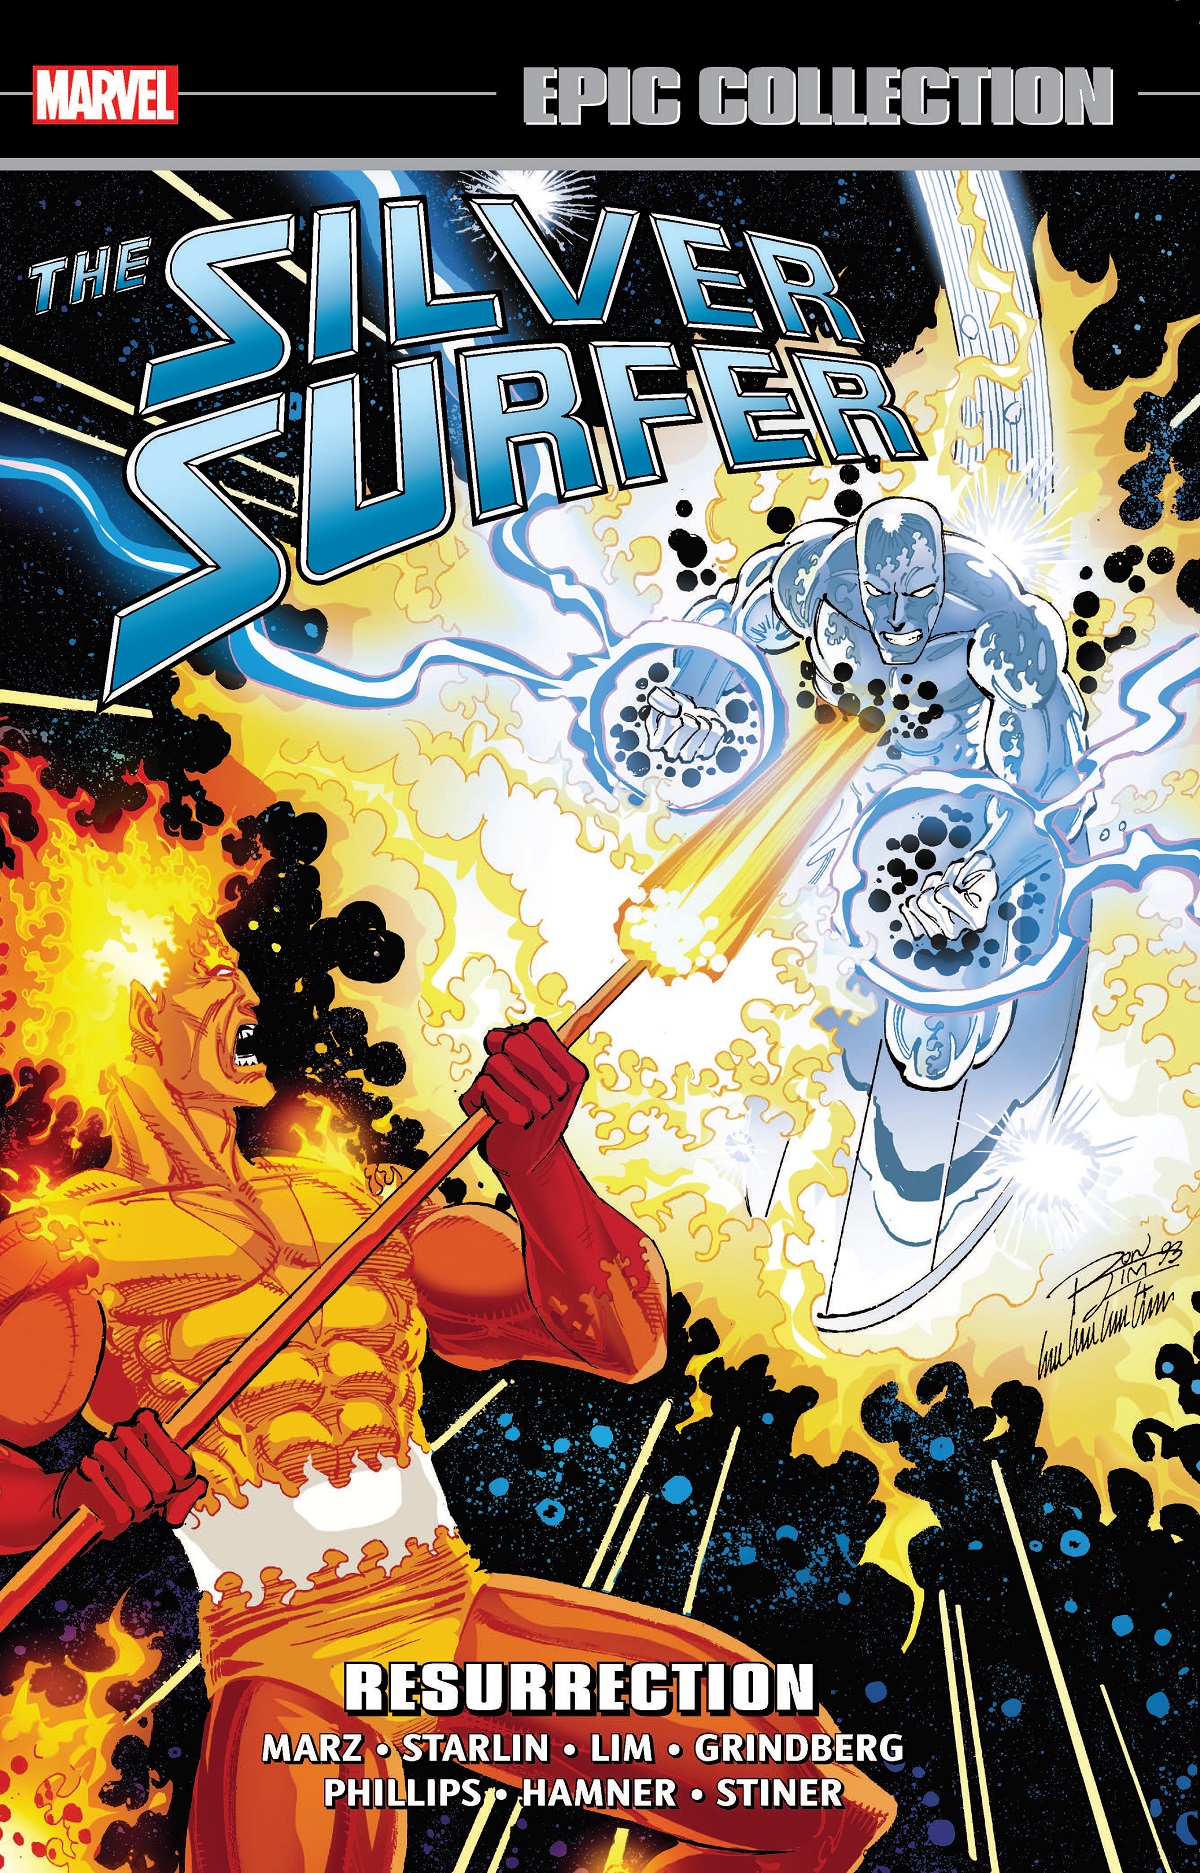 Silver Surfer: Black Vol 1 1, Marvel Database